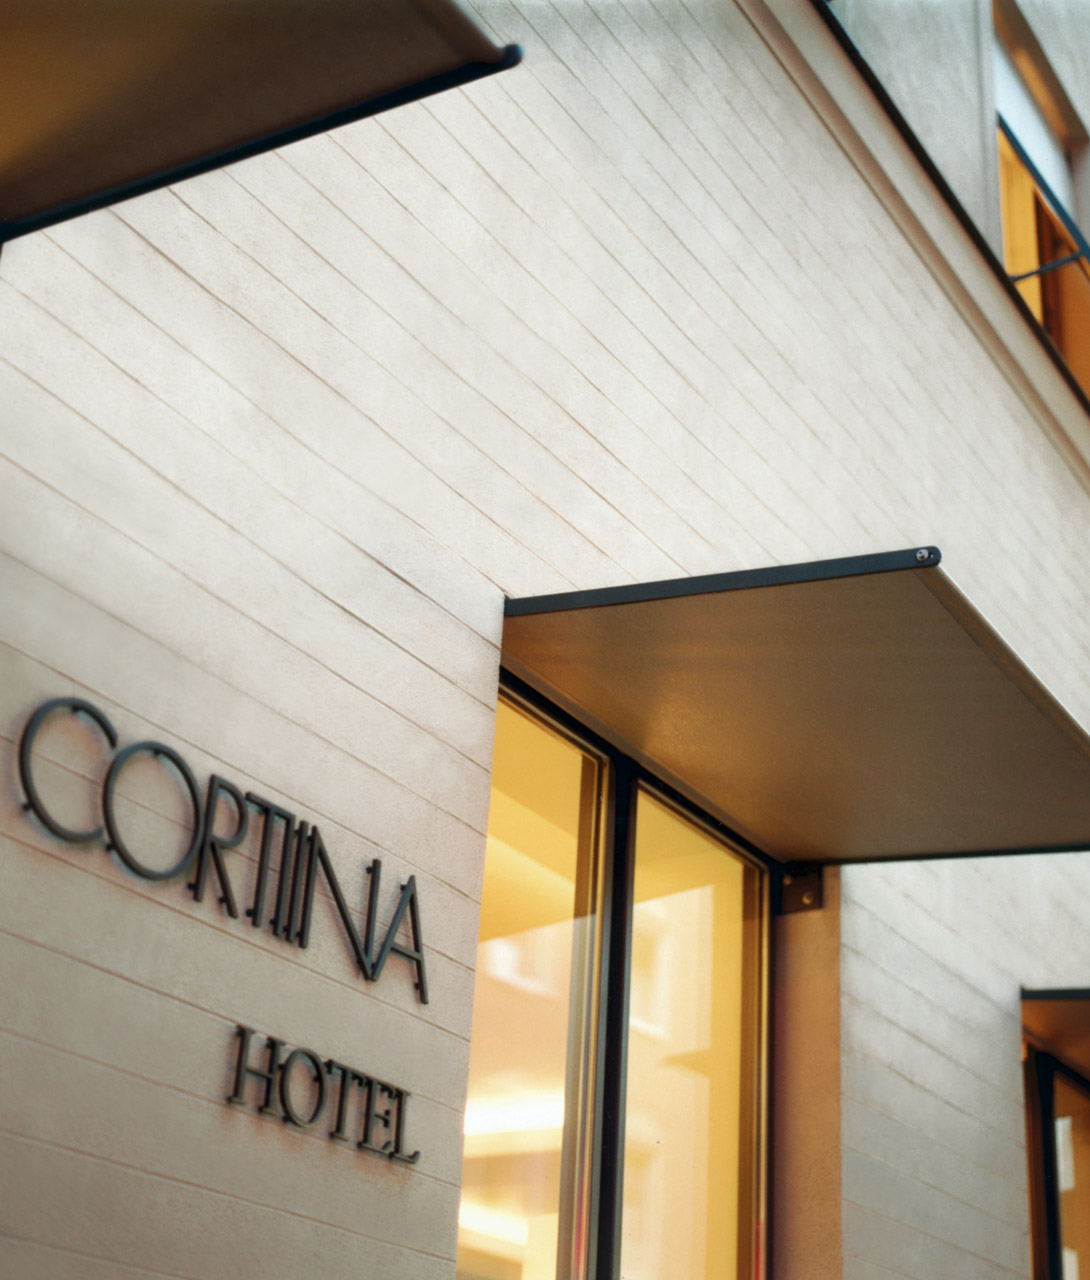 Cortiina Hotel Facade in Munich